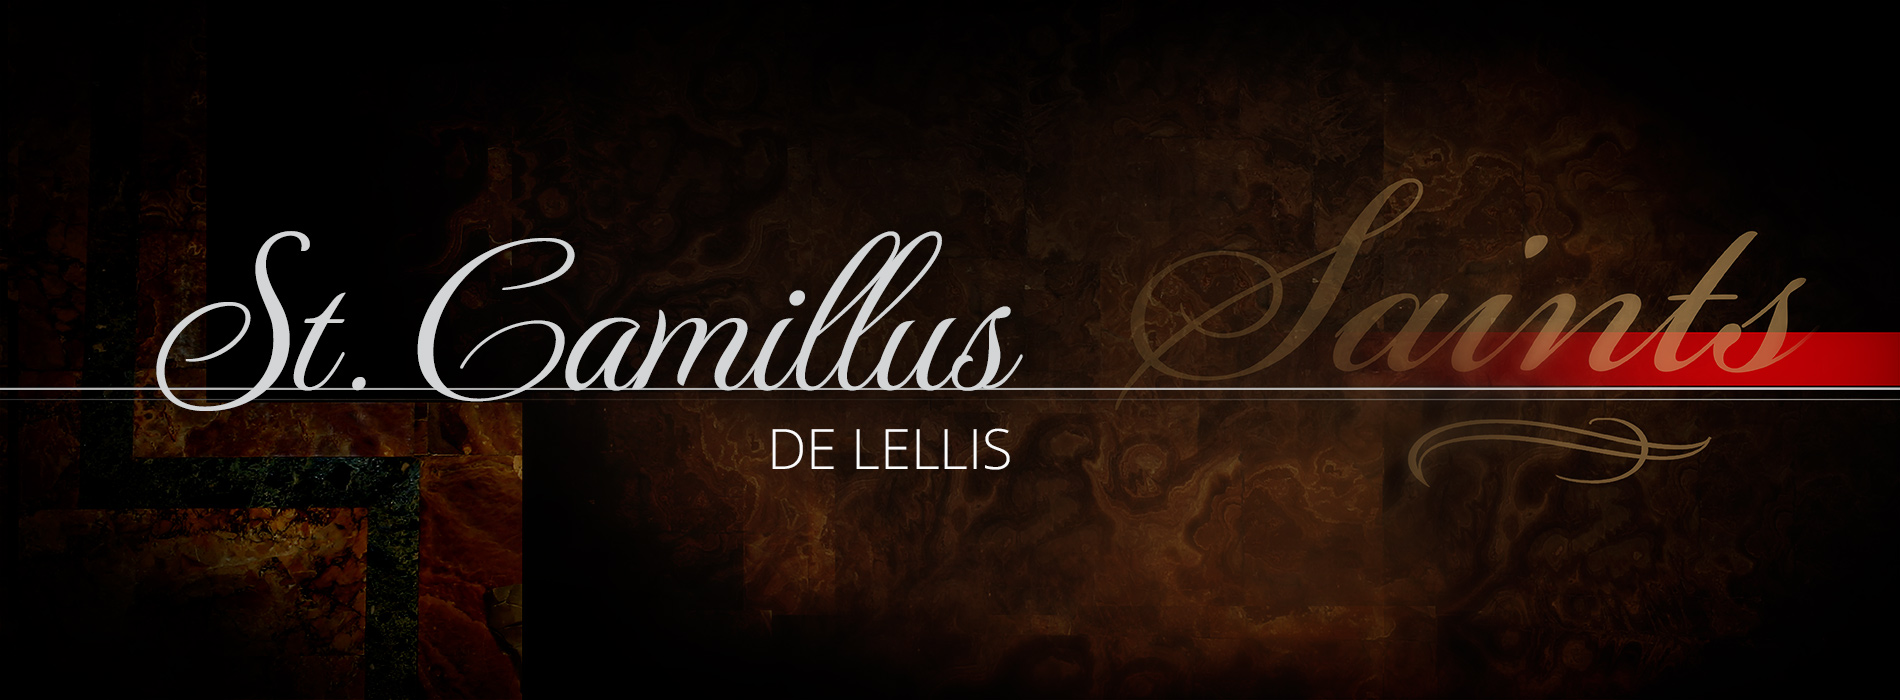 St. Camillus de Lellis